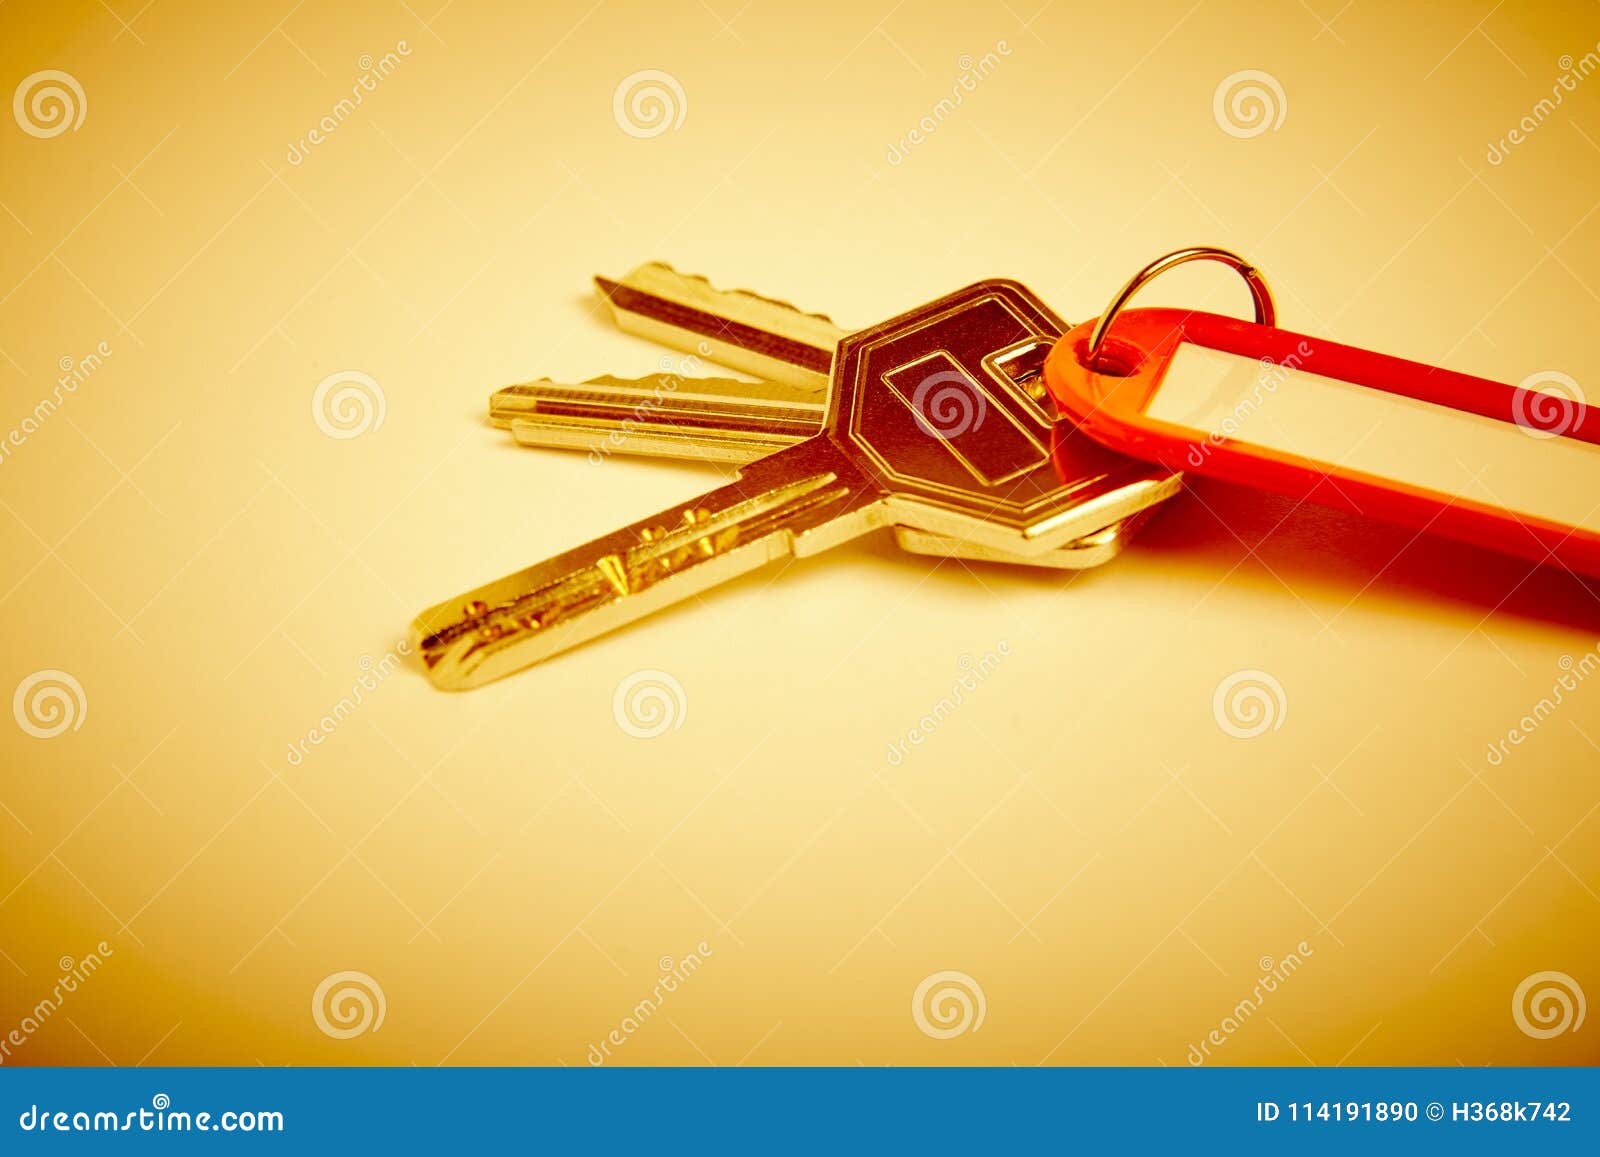 Porta-chaves com chaves no tom dourado Aluguel, compra HOME